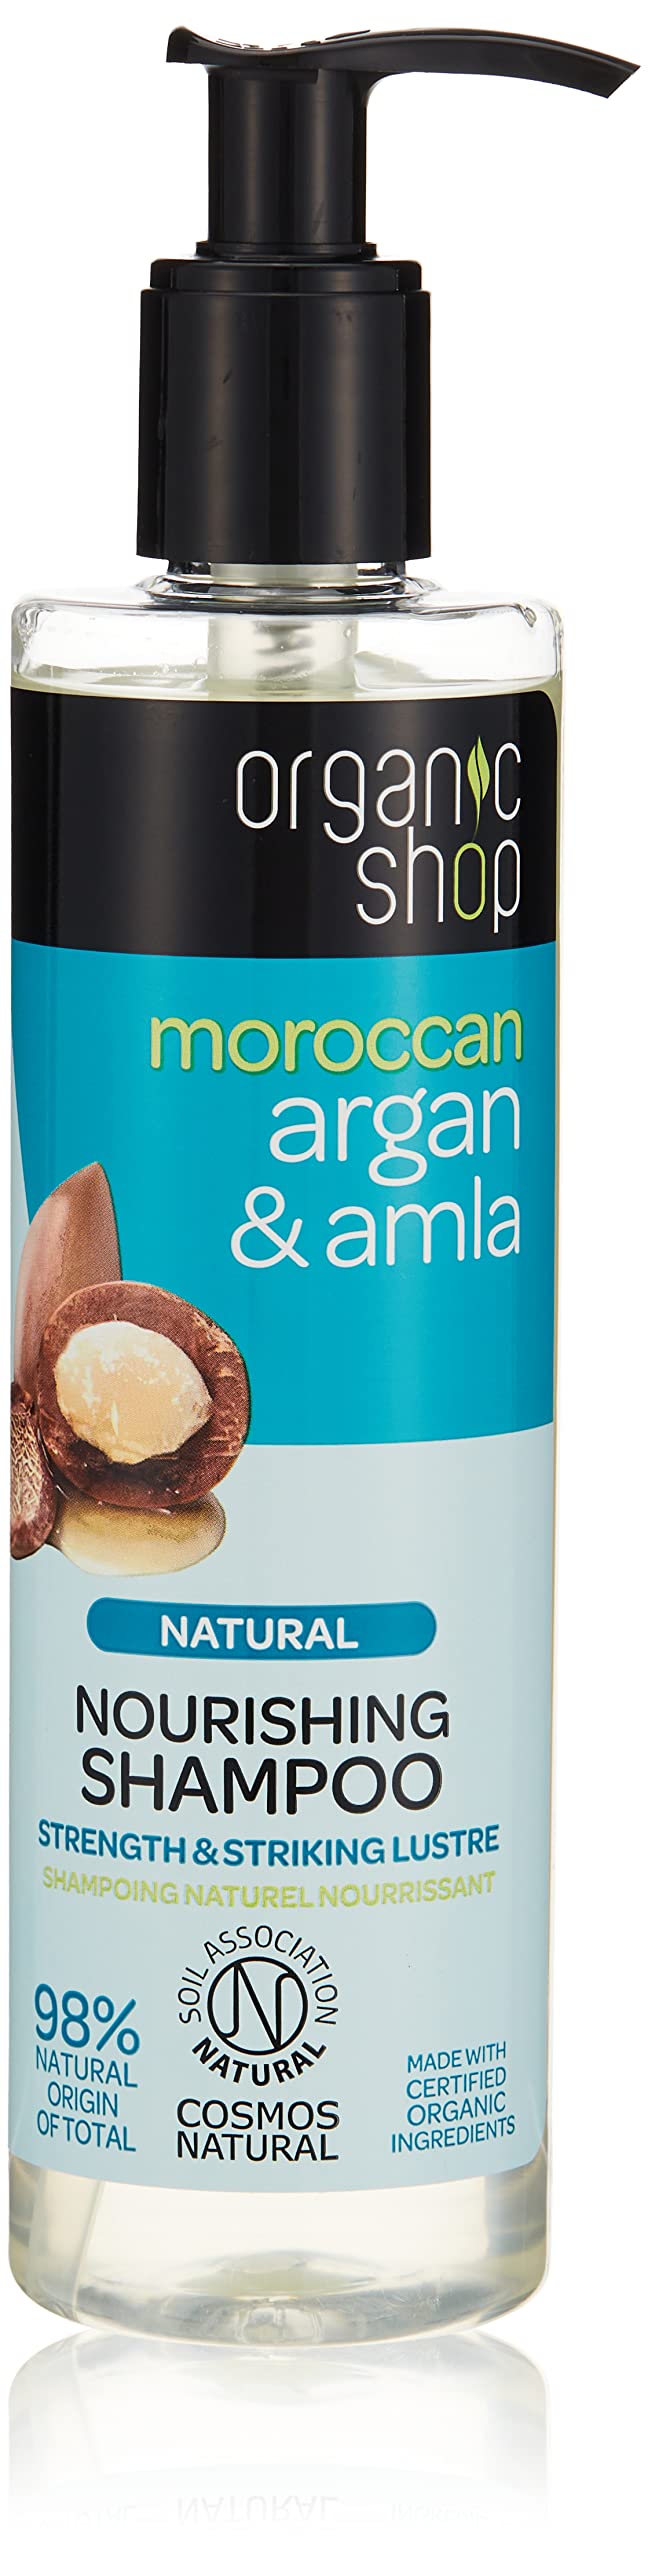 organic ship szampon kokos opinie